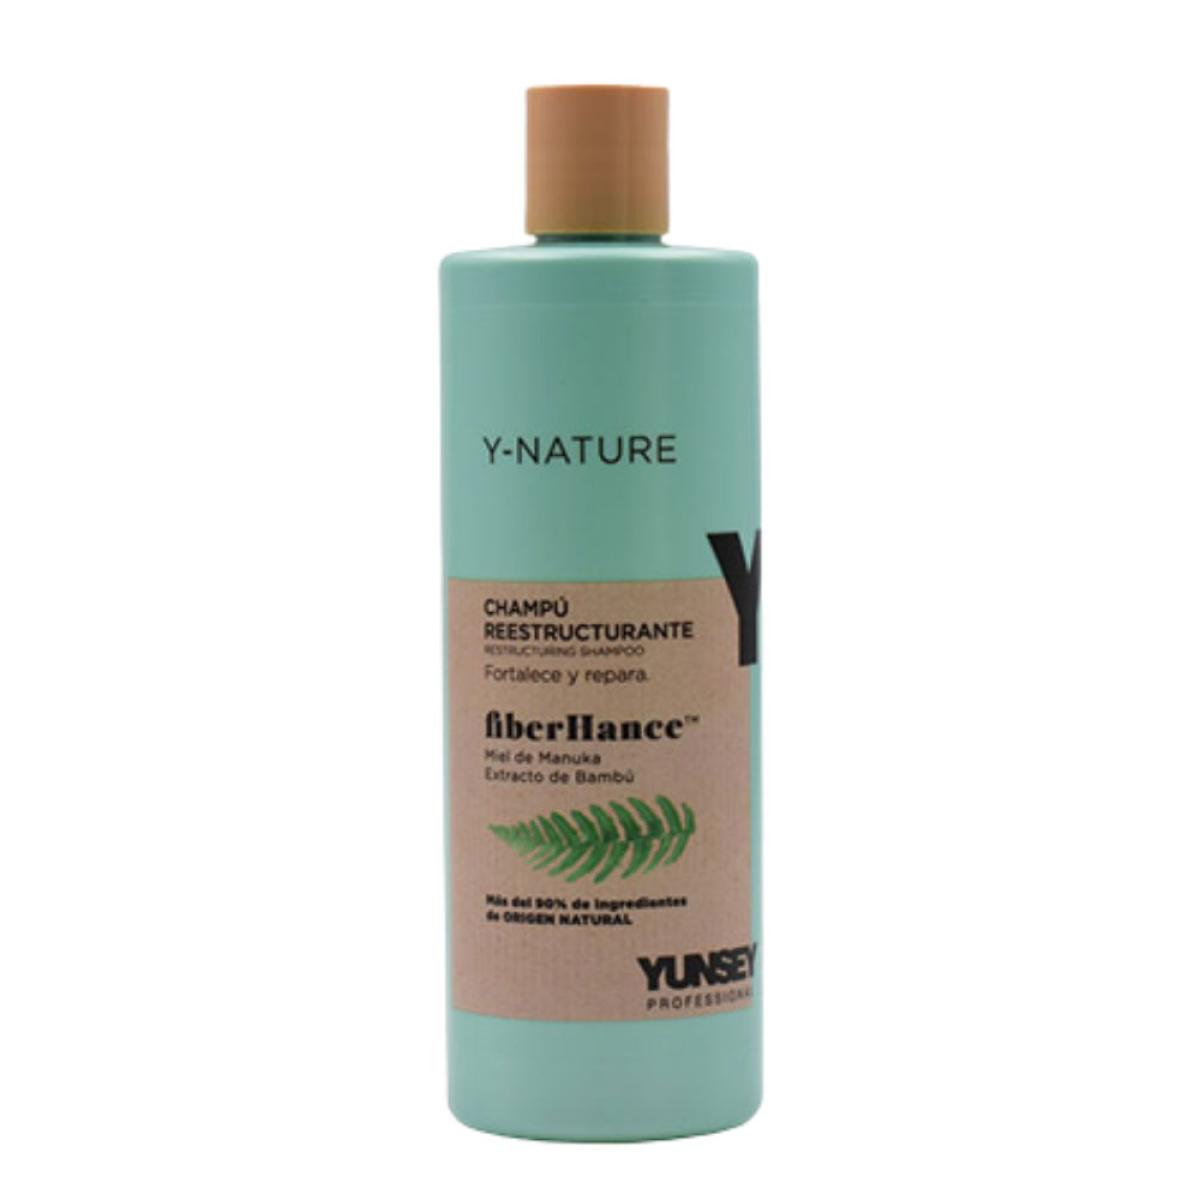 شامپو ارگانیک ترمیم کننده مو - Restructuring shampoo Y-Nature 400ml